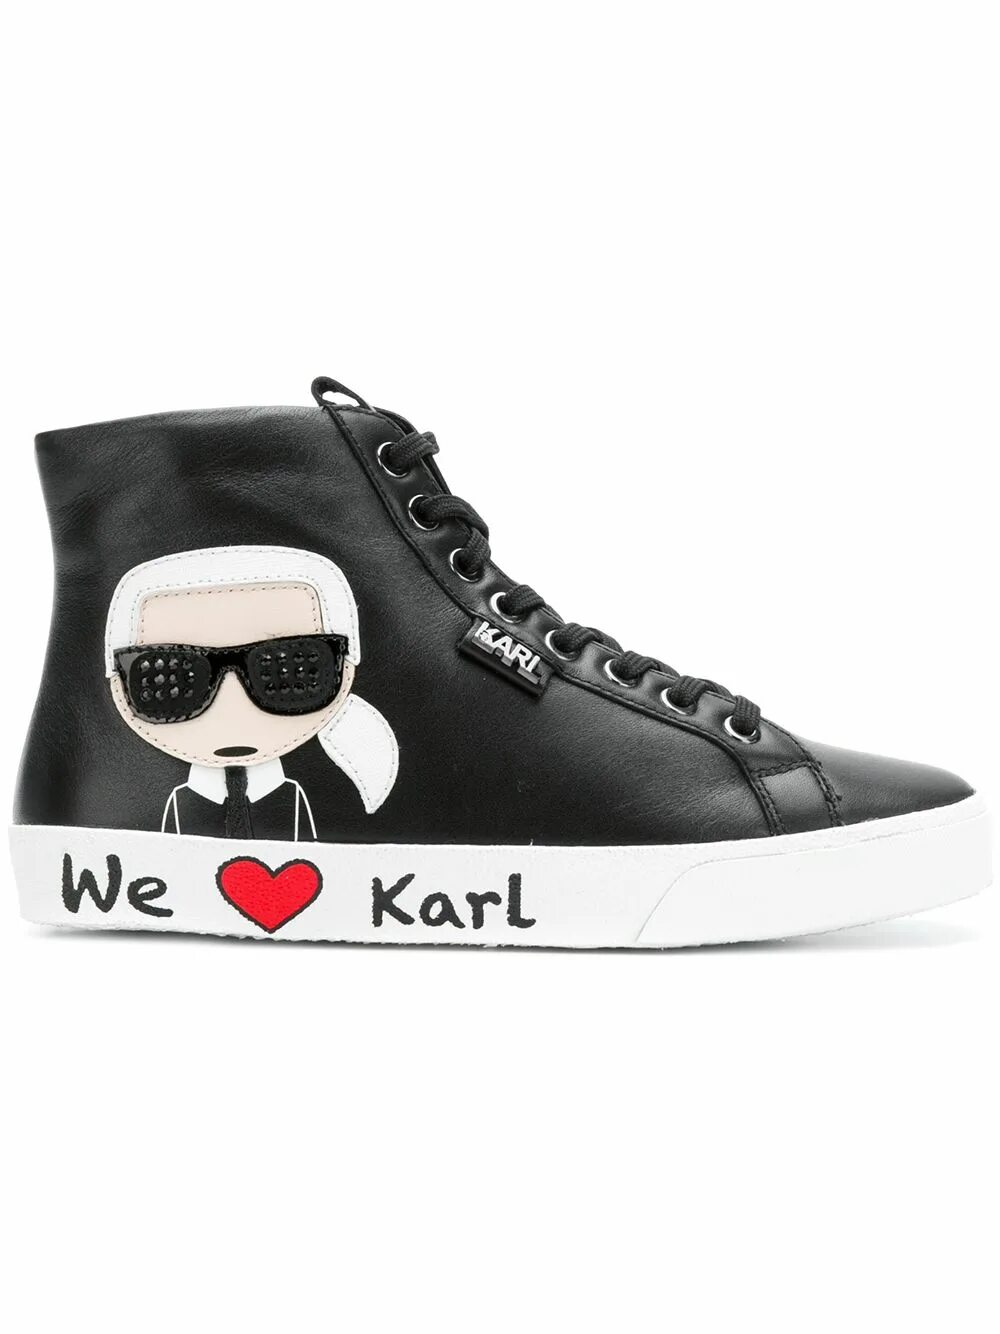 Лагерфельд купить кроссовки. Кеды Karl Lagerfeld женские. Кроссовки Karl Lagerfeld черные. Кроссовки Karl Lagerfeld женские.